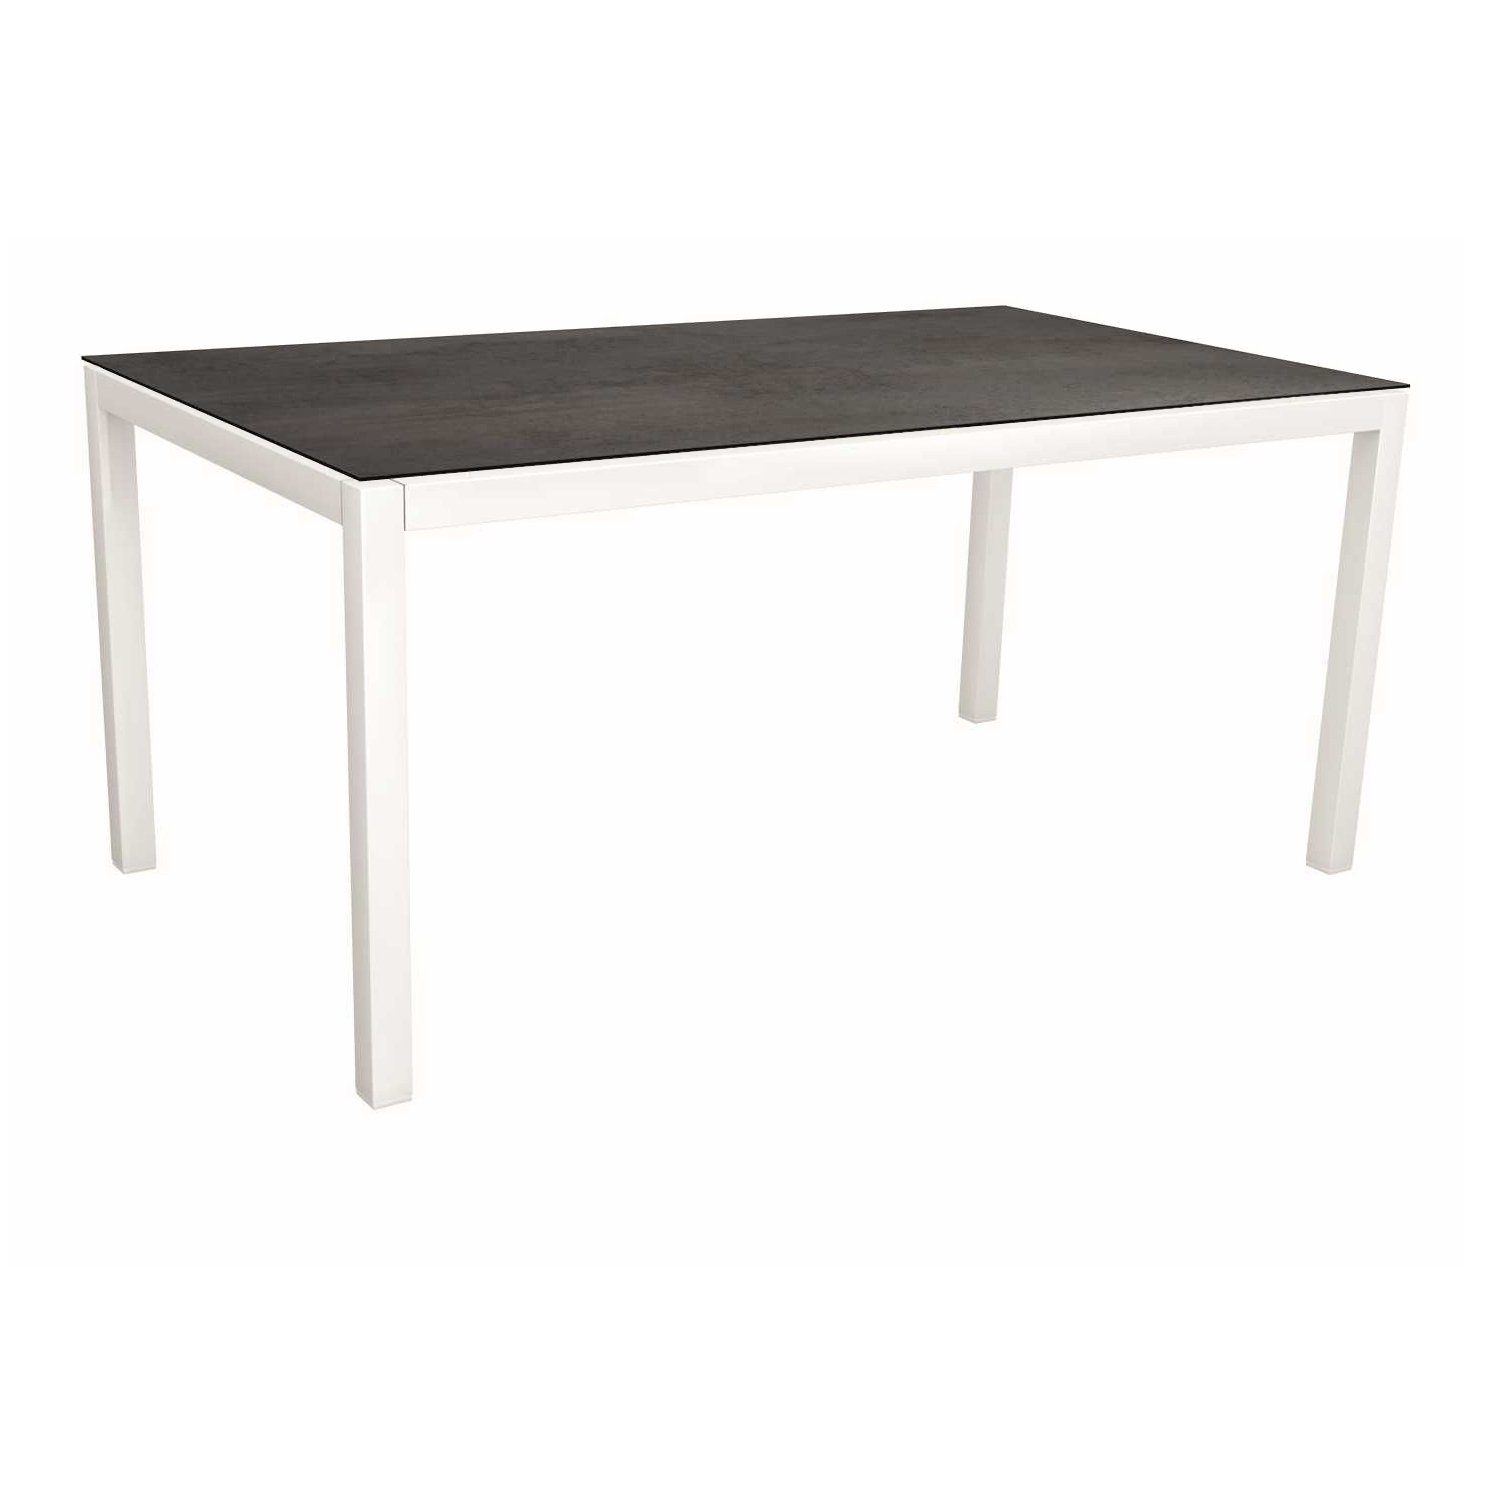 Stern Tischsystem, Gestell Aluminium weiß, Tischplatte HPL Nitro, Größe: 160x90 cm